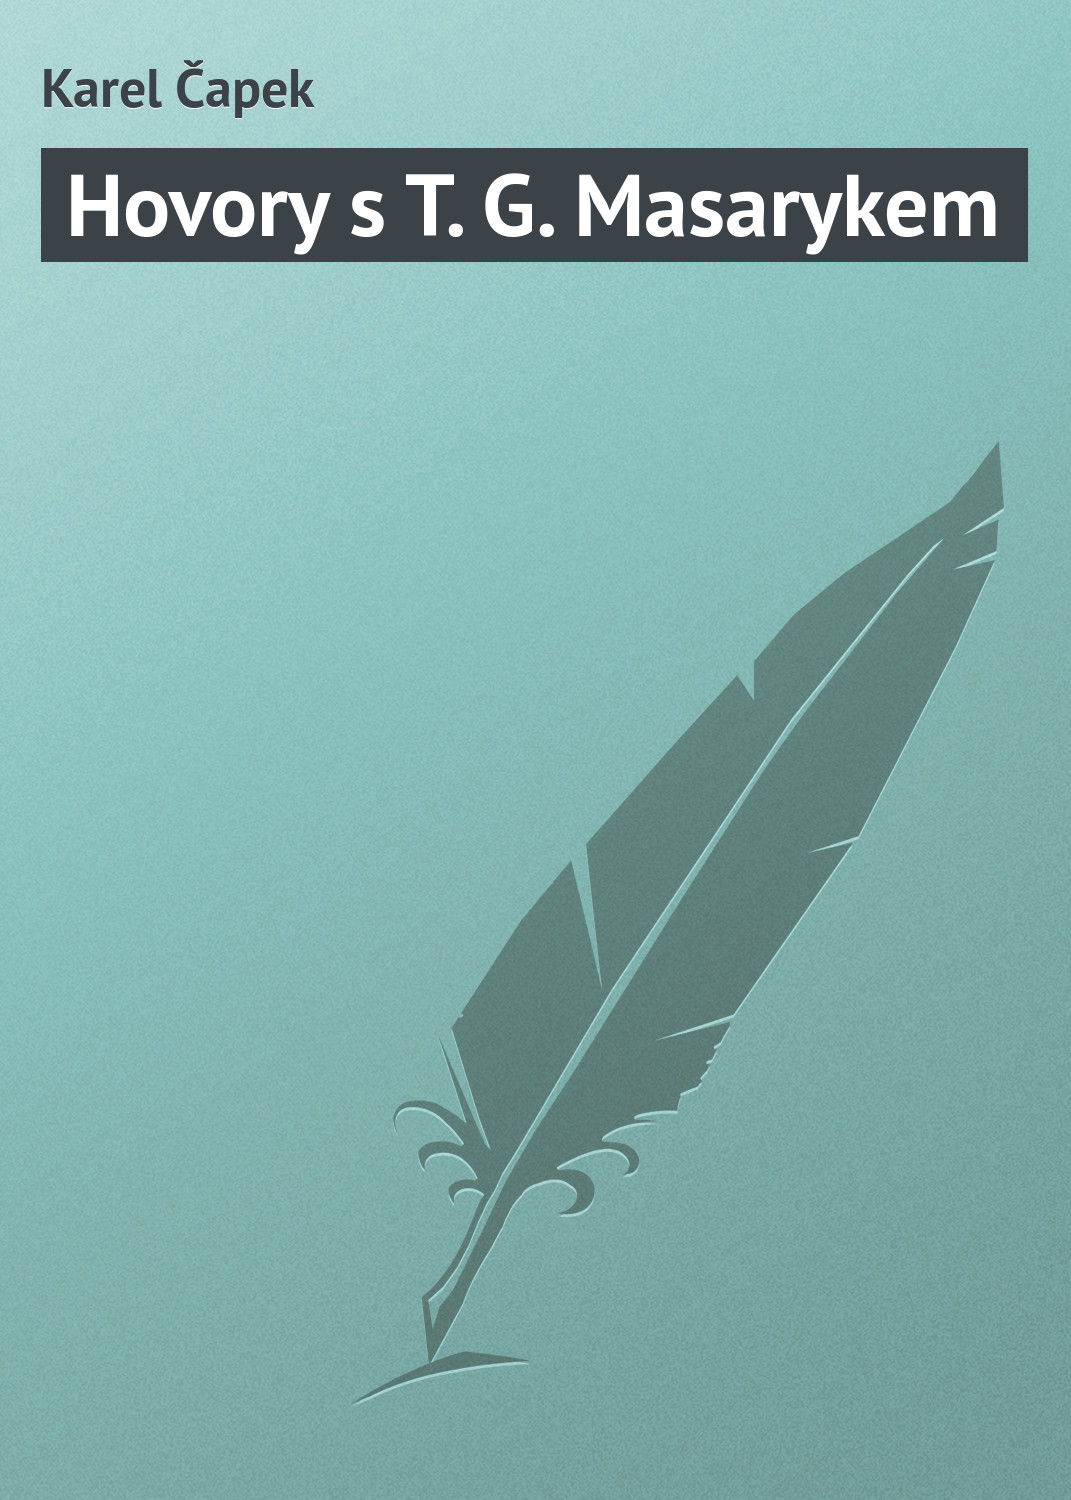 Книга Hovory s T. G. Masarykem из серии , созданная Karel Čapek, может относится к жанру Зарубежная классика, Зарубежная старинная литература. Стоимость электронной книги Hovory s T. G. Masarykem с идентификатором 20833622 составляет 5.99 руб.